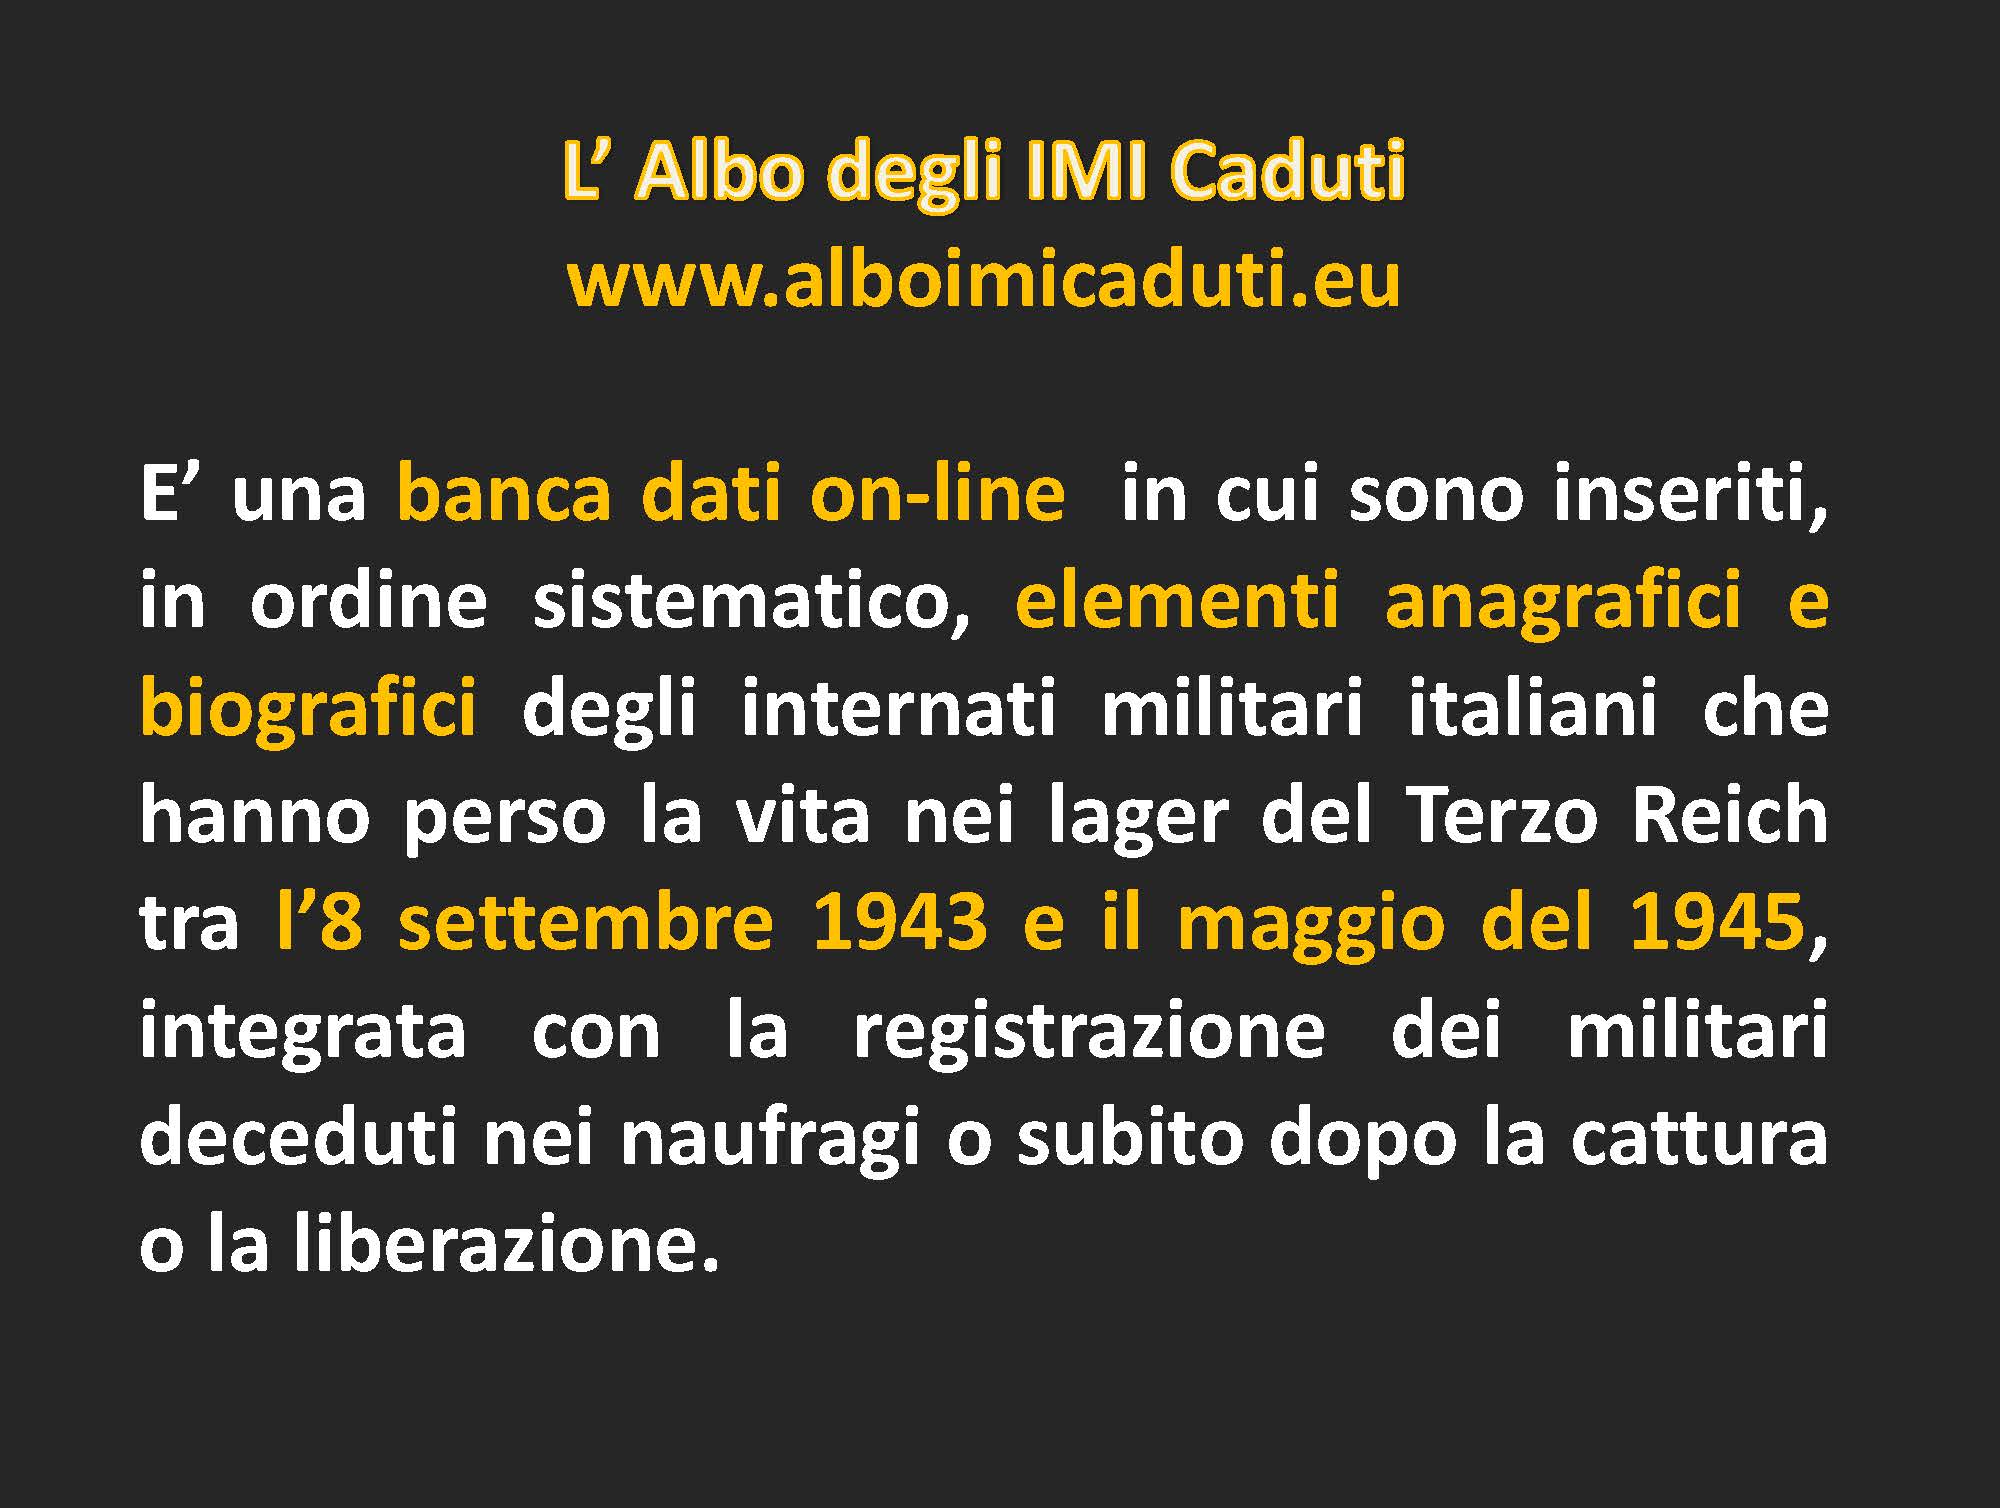 Le memorie degli IMI internati militari italiani_Pagina_050